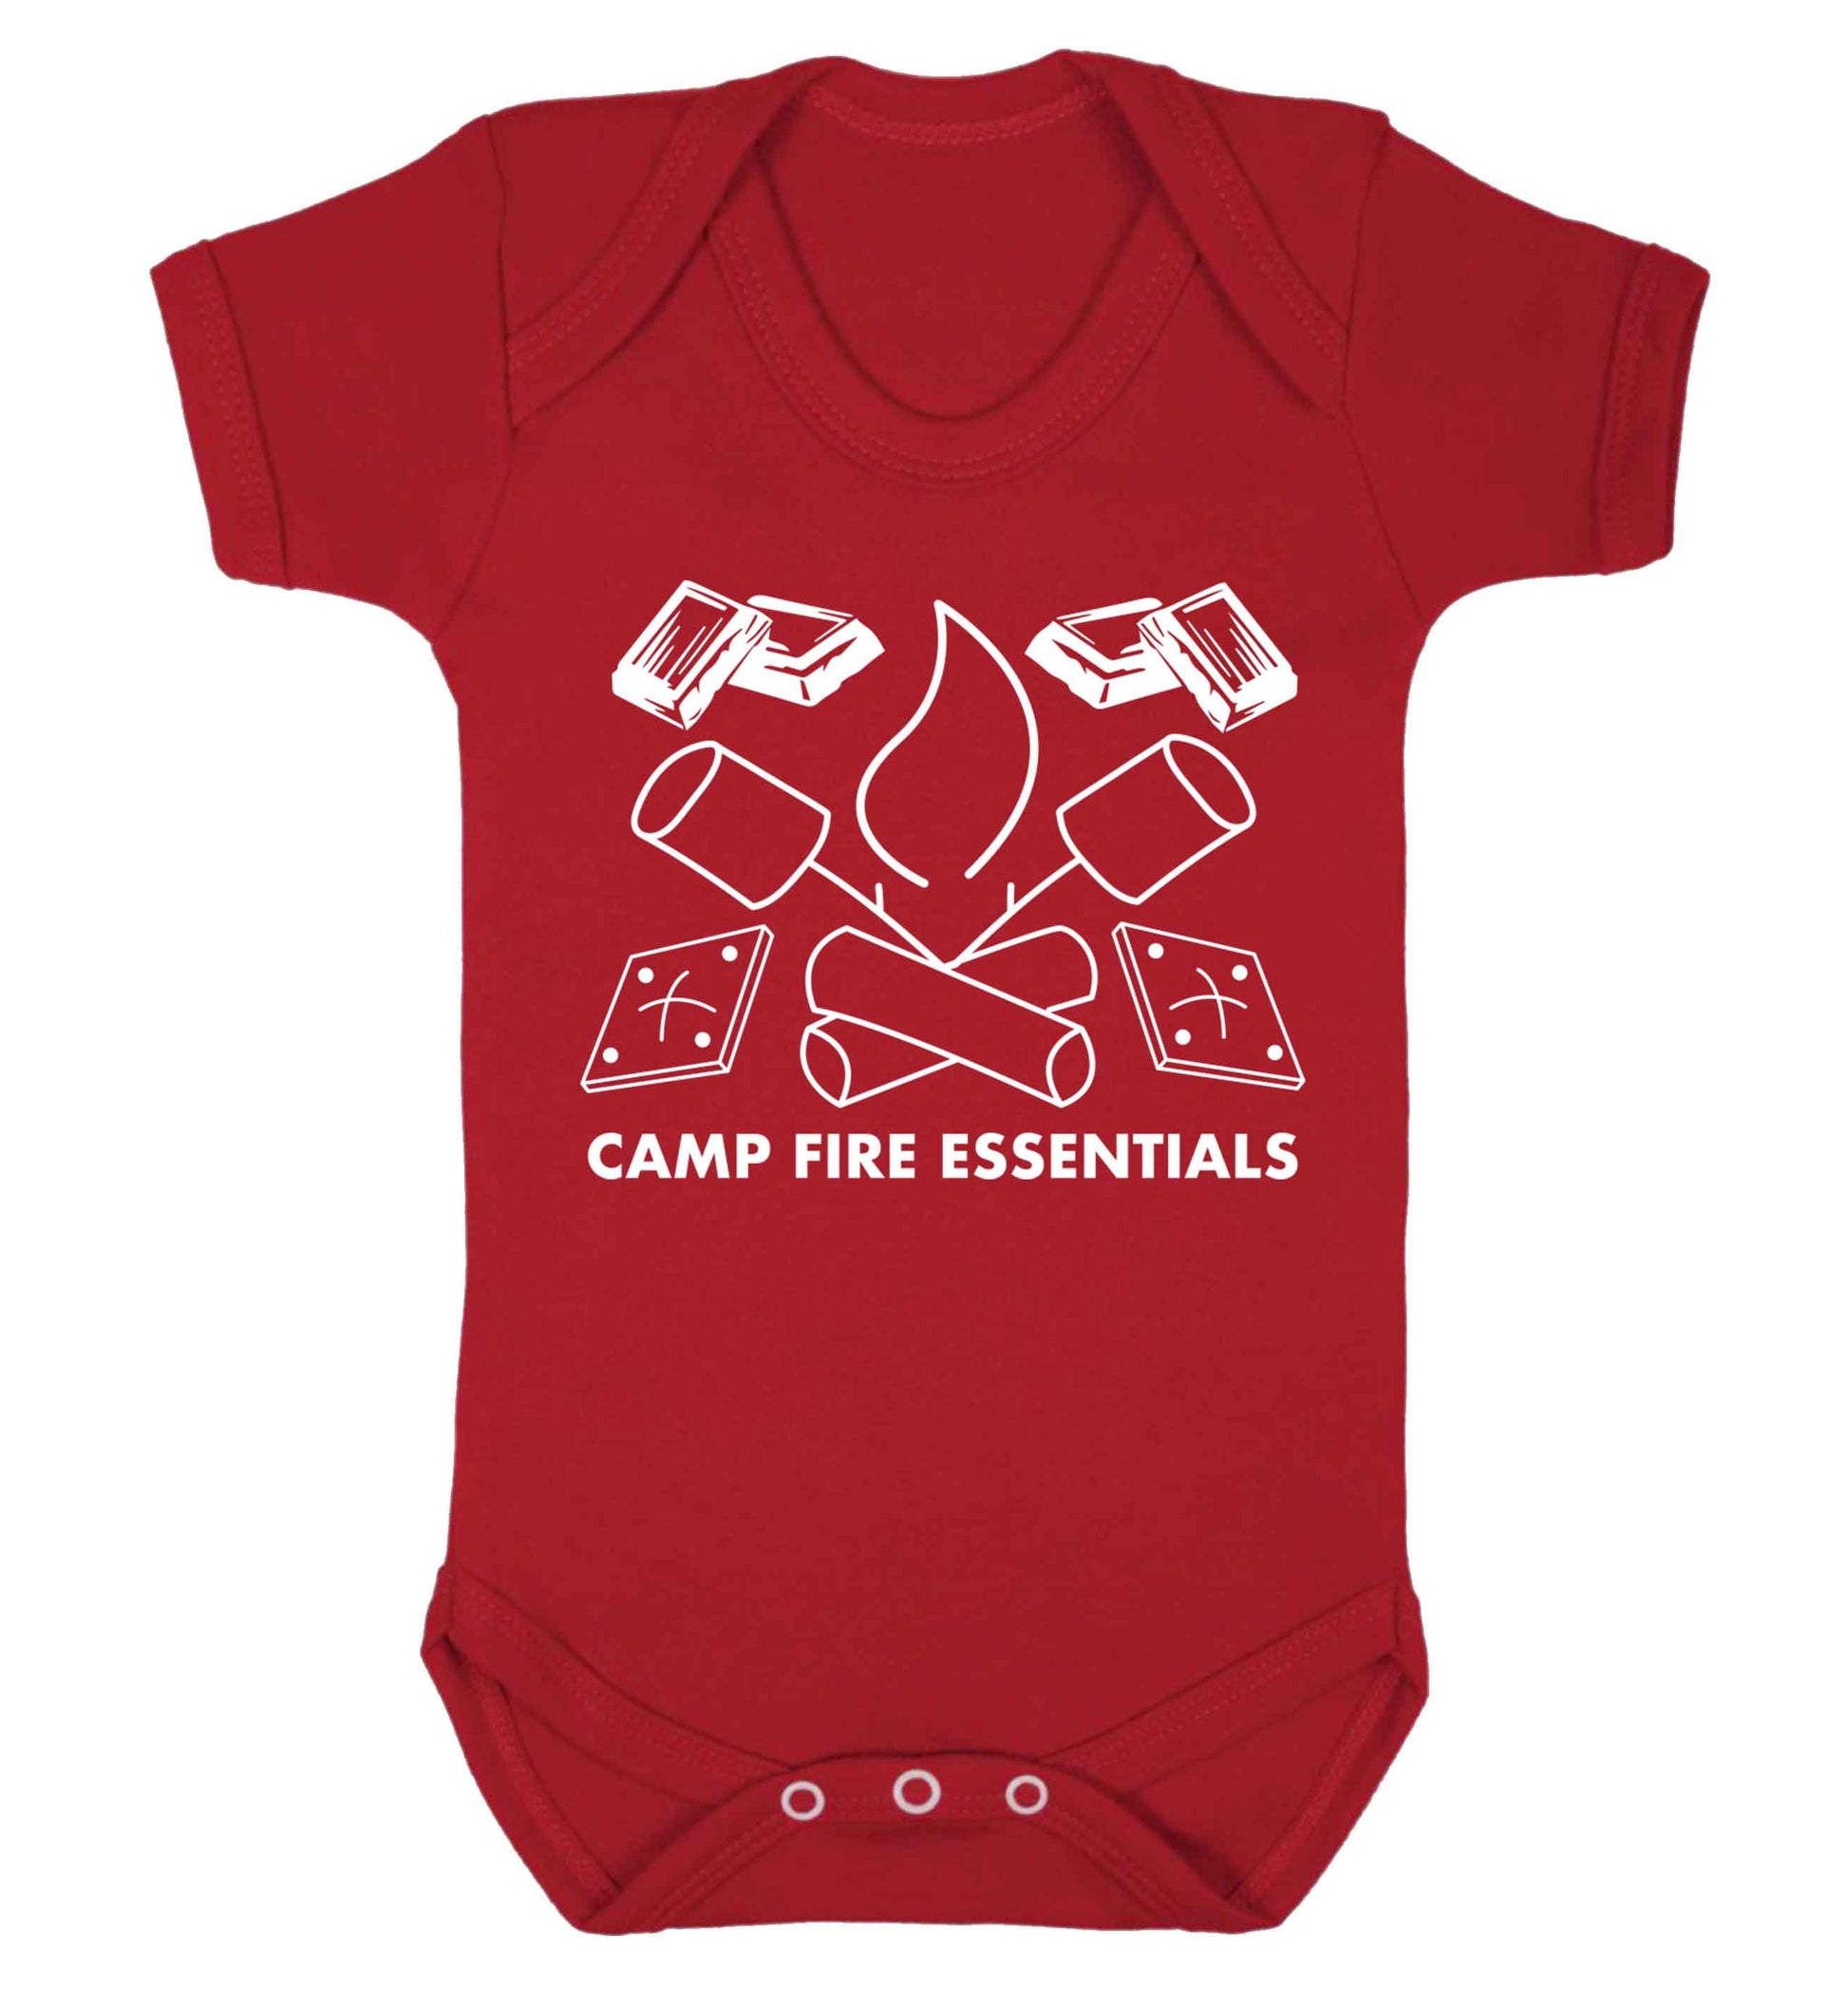 Campfire essentials Baby Vest red 18-24 months